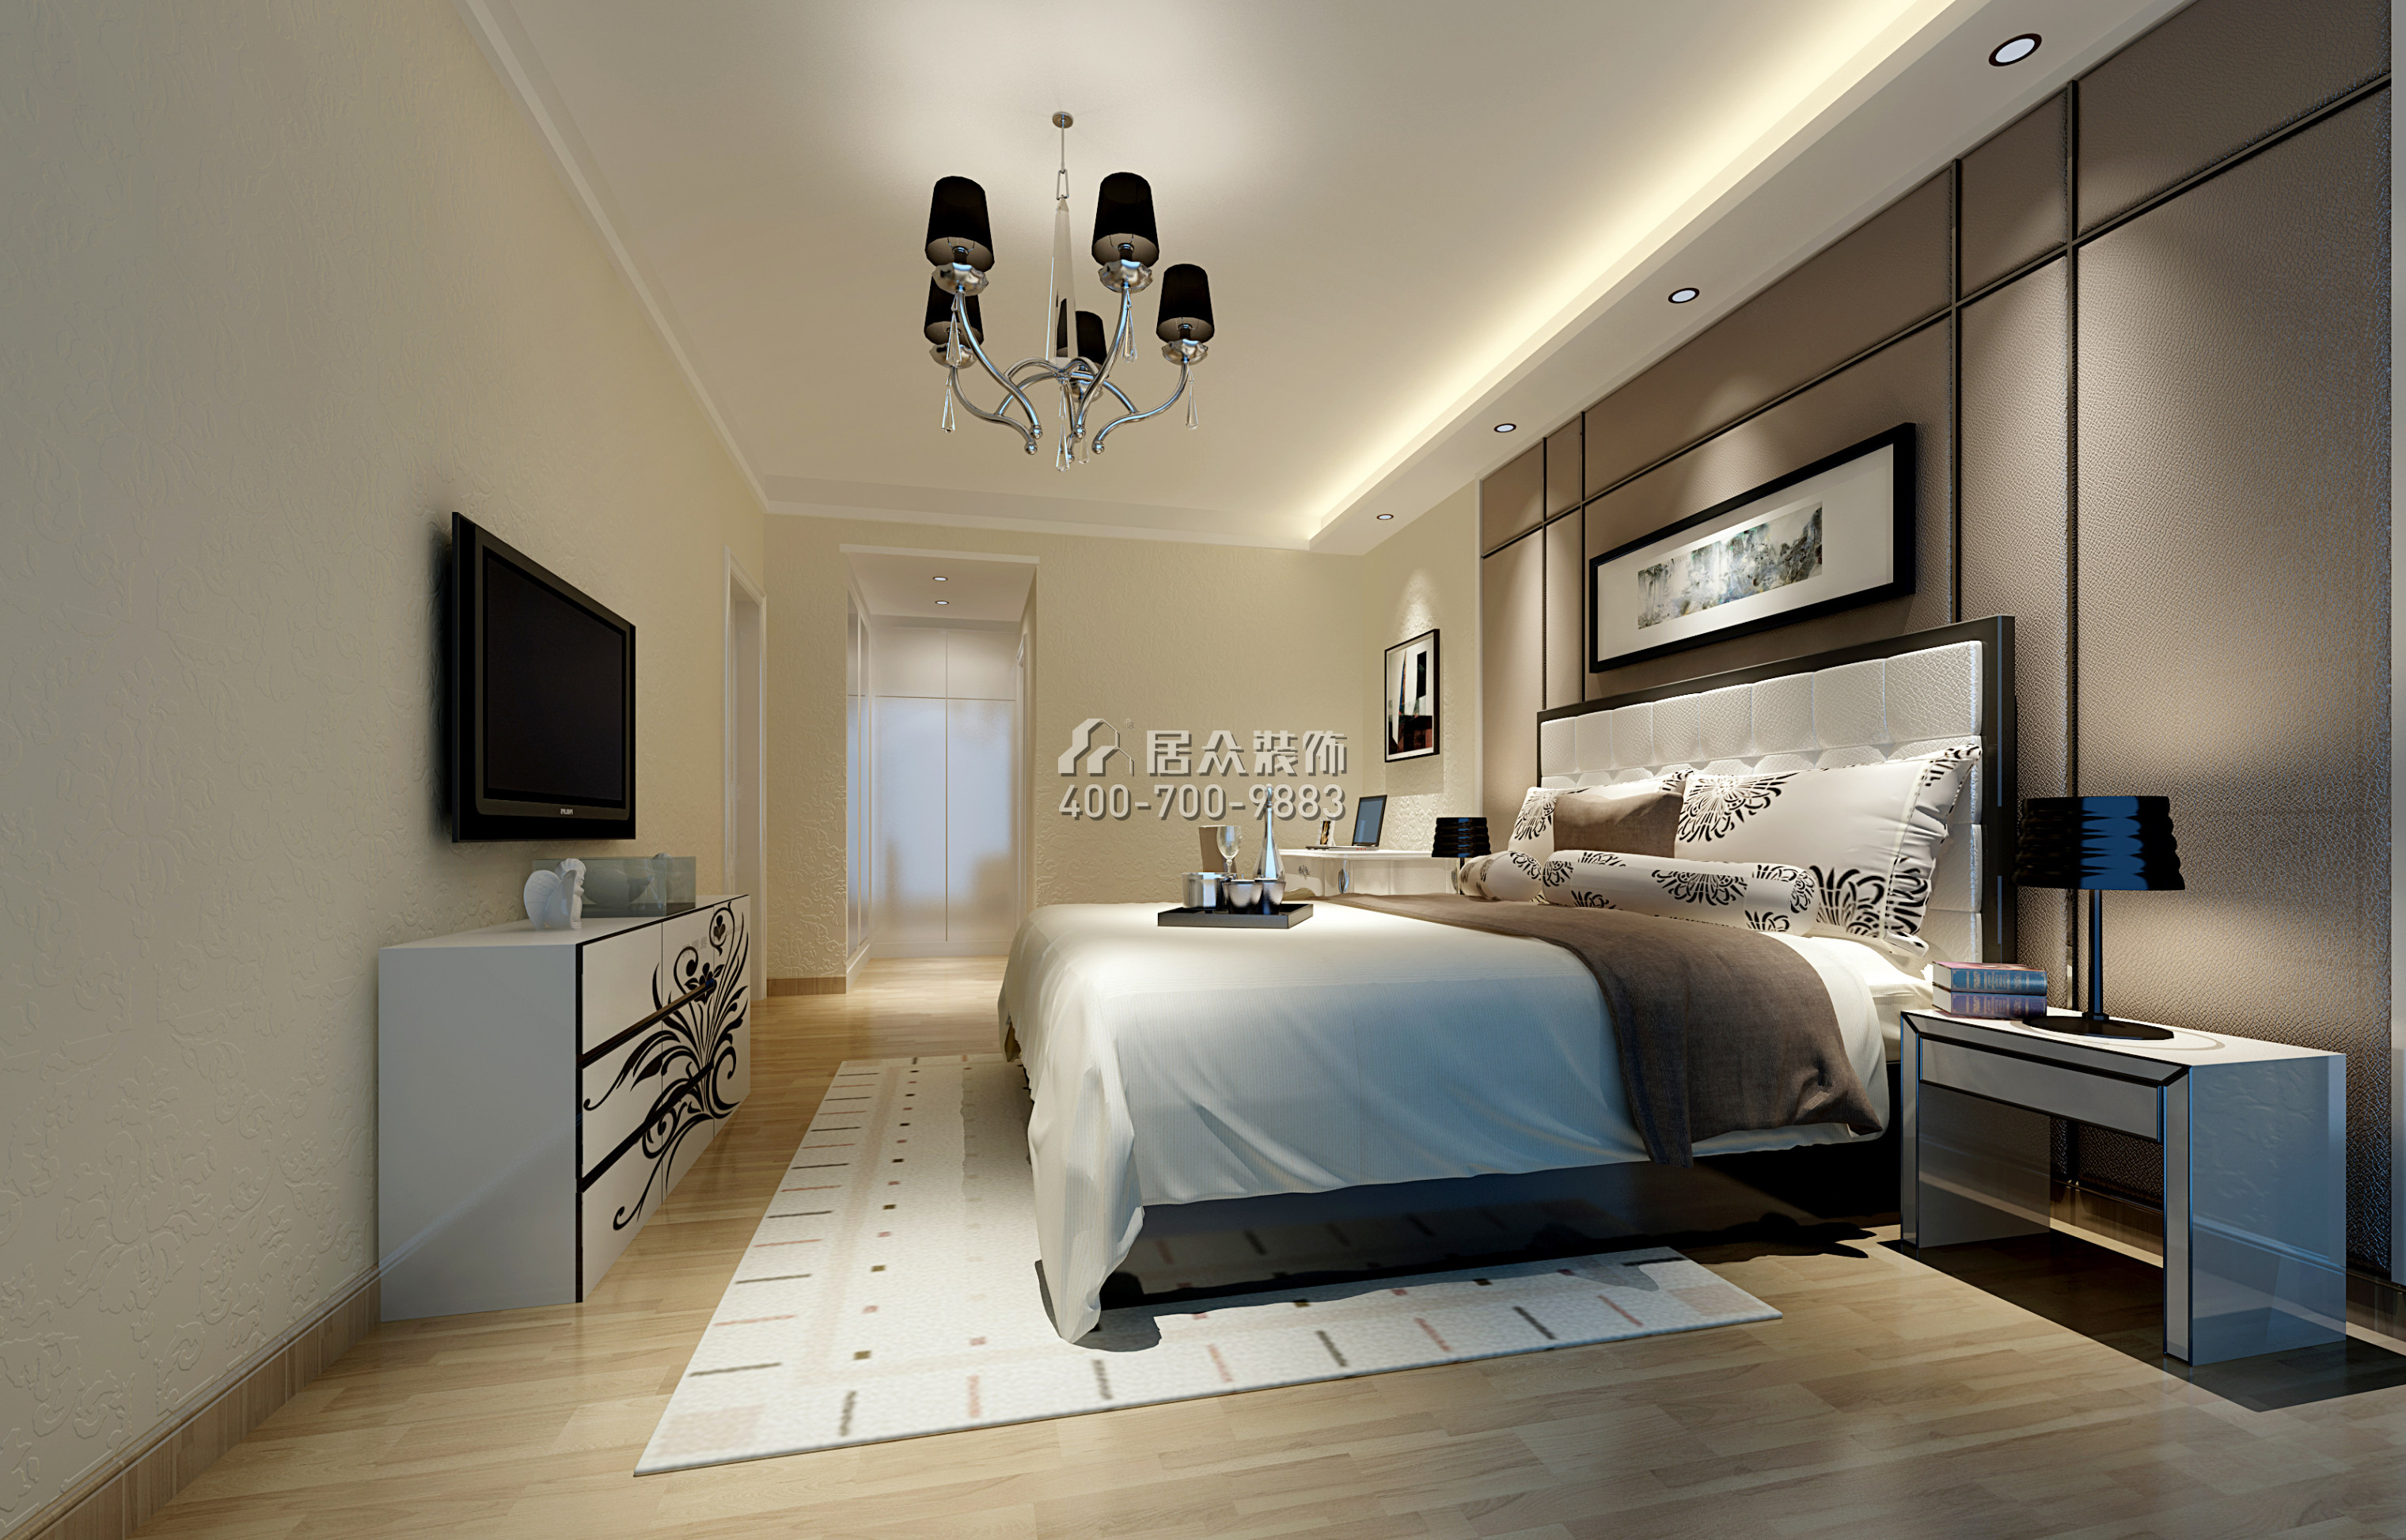 宏发世纪城95平方米现代简约风格平层户型卧室装修效果图